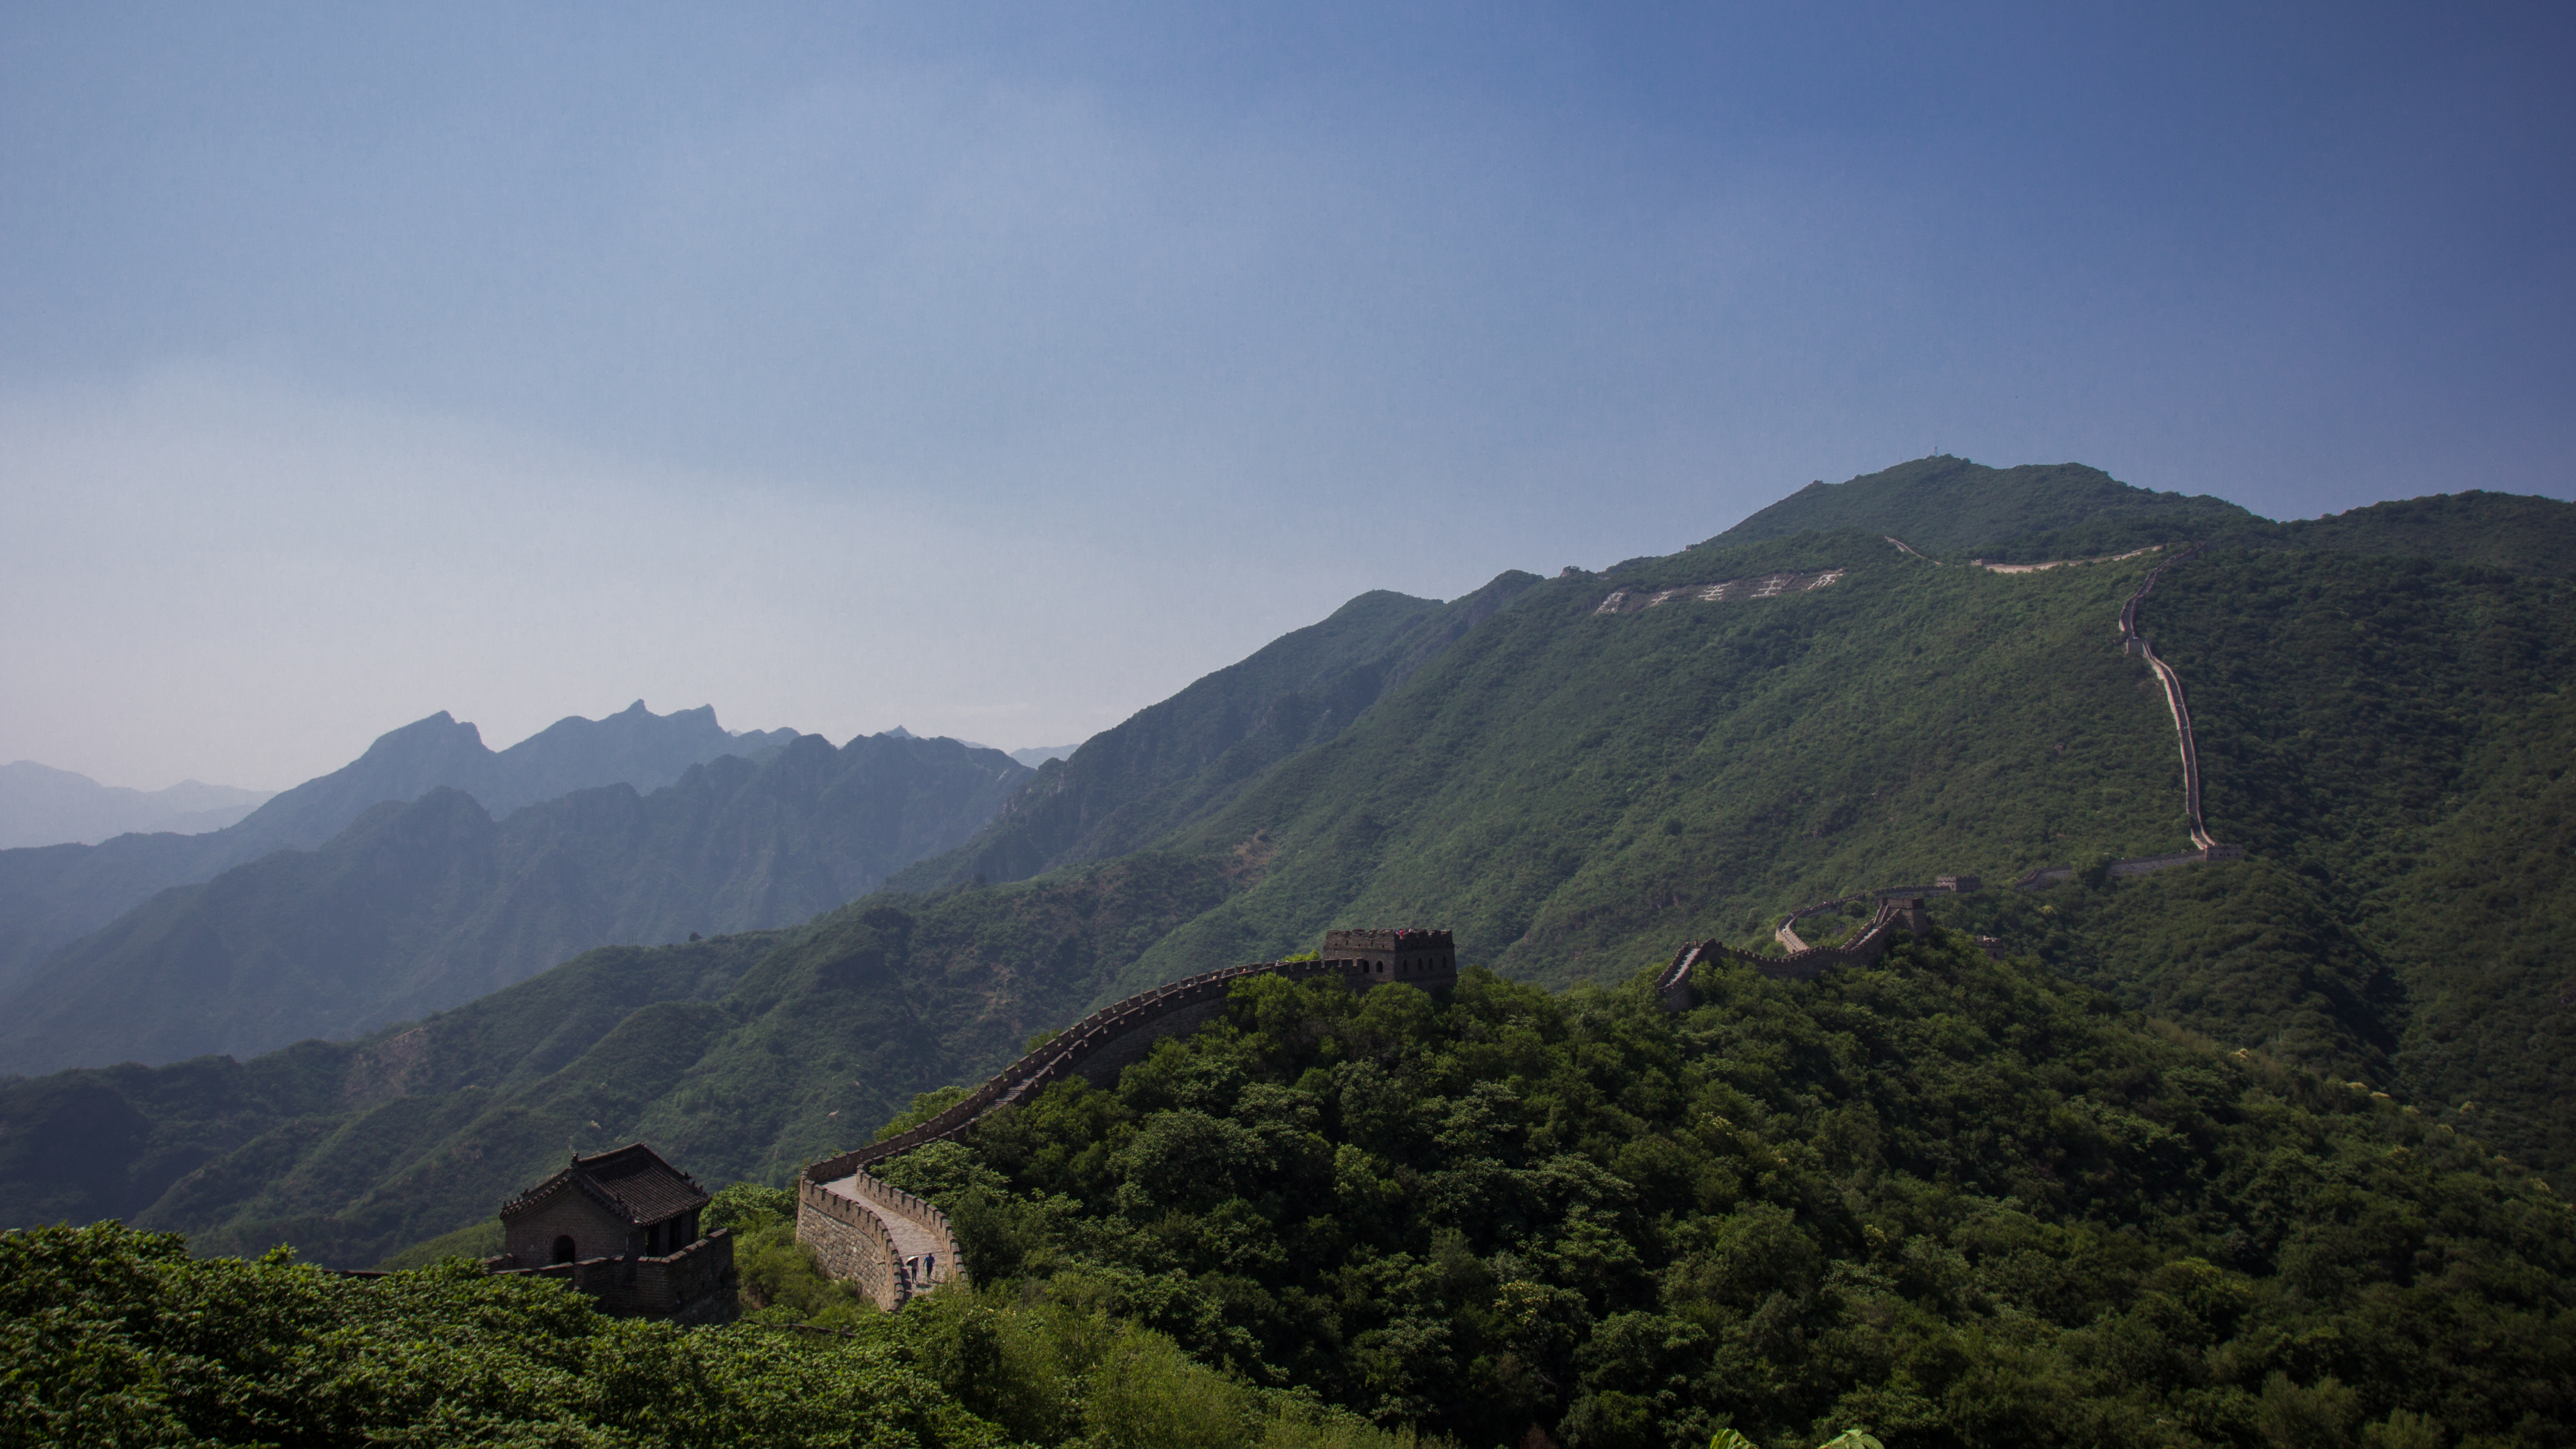 中国的长城, 多山的地貌, 山站, 高地, 植被 壁纸 3840x2160 允许